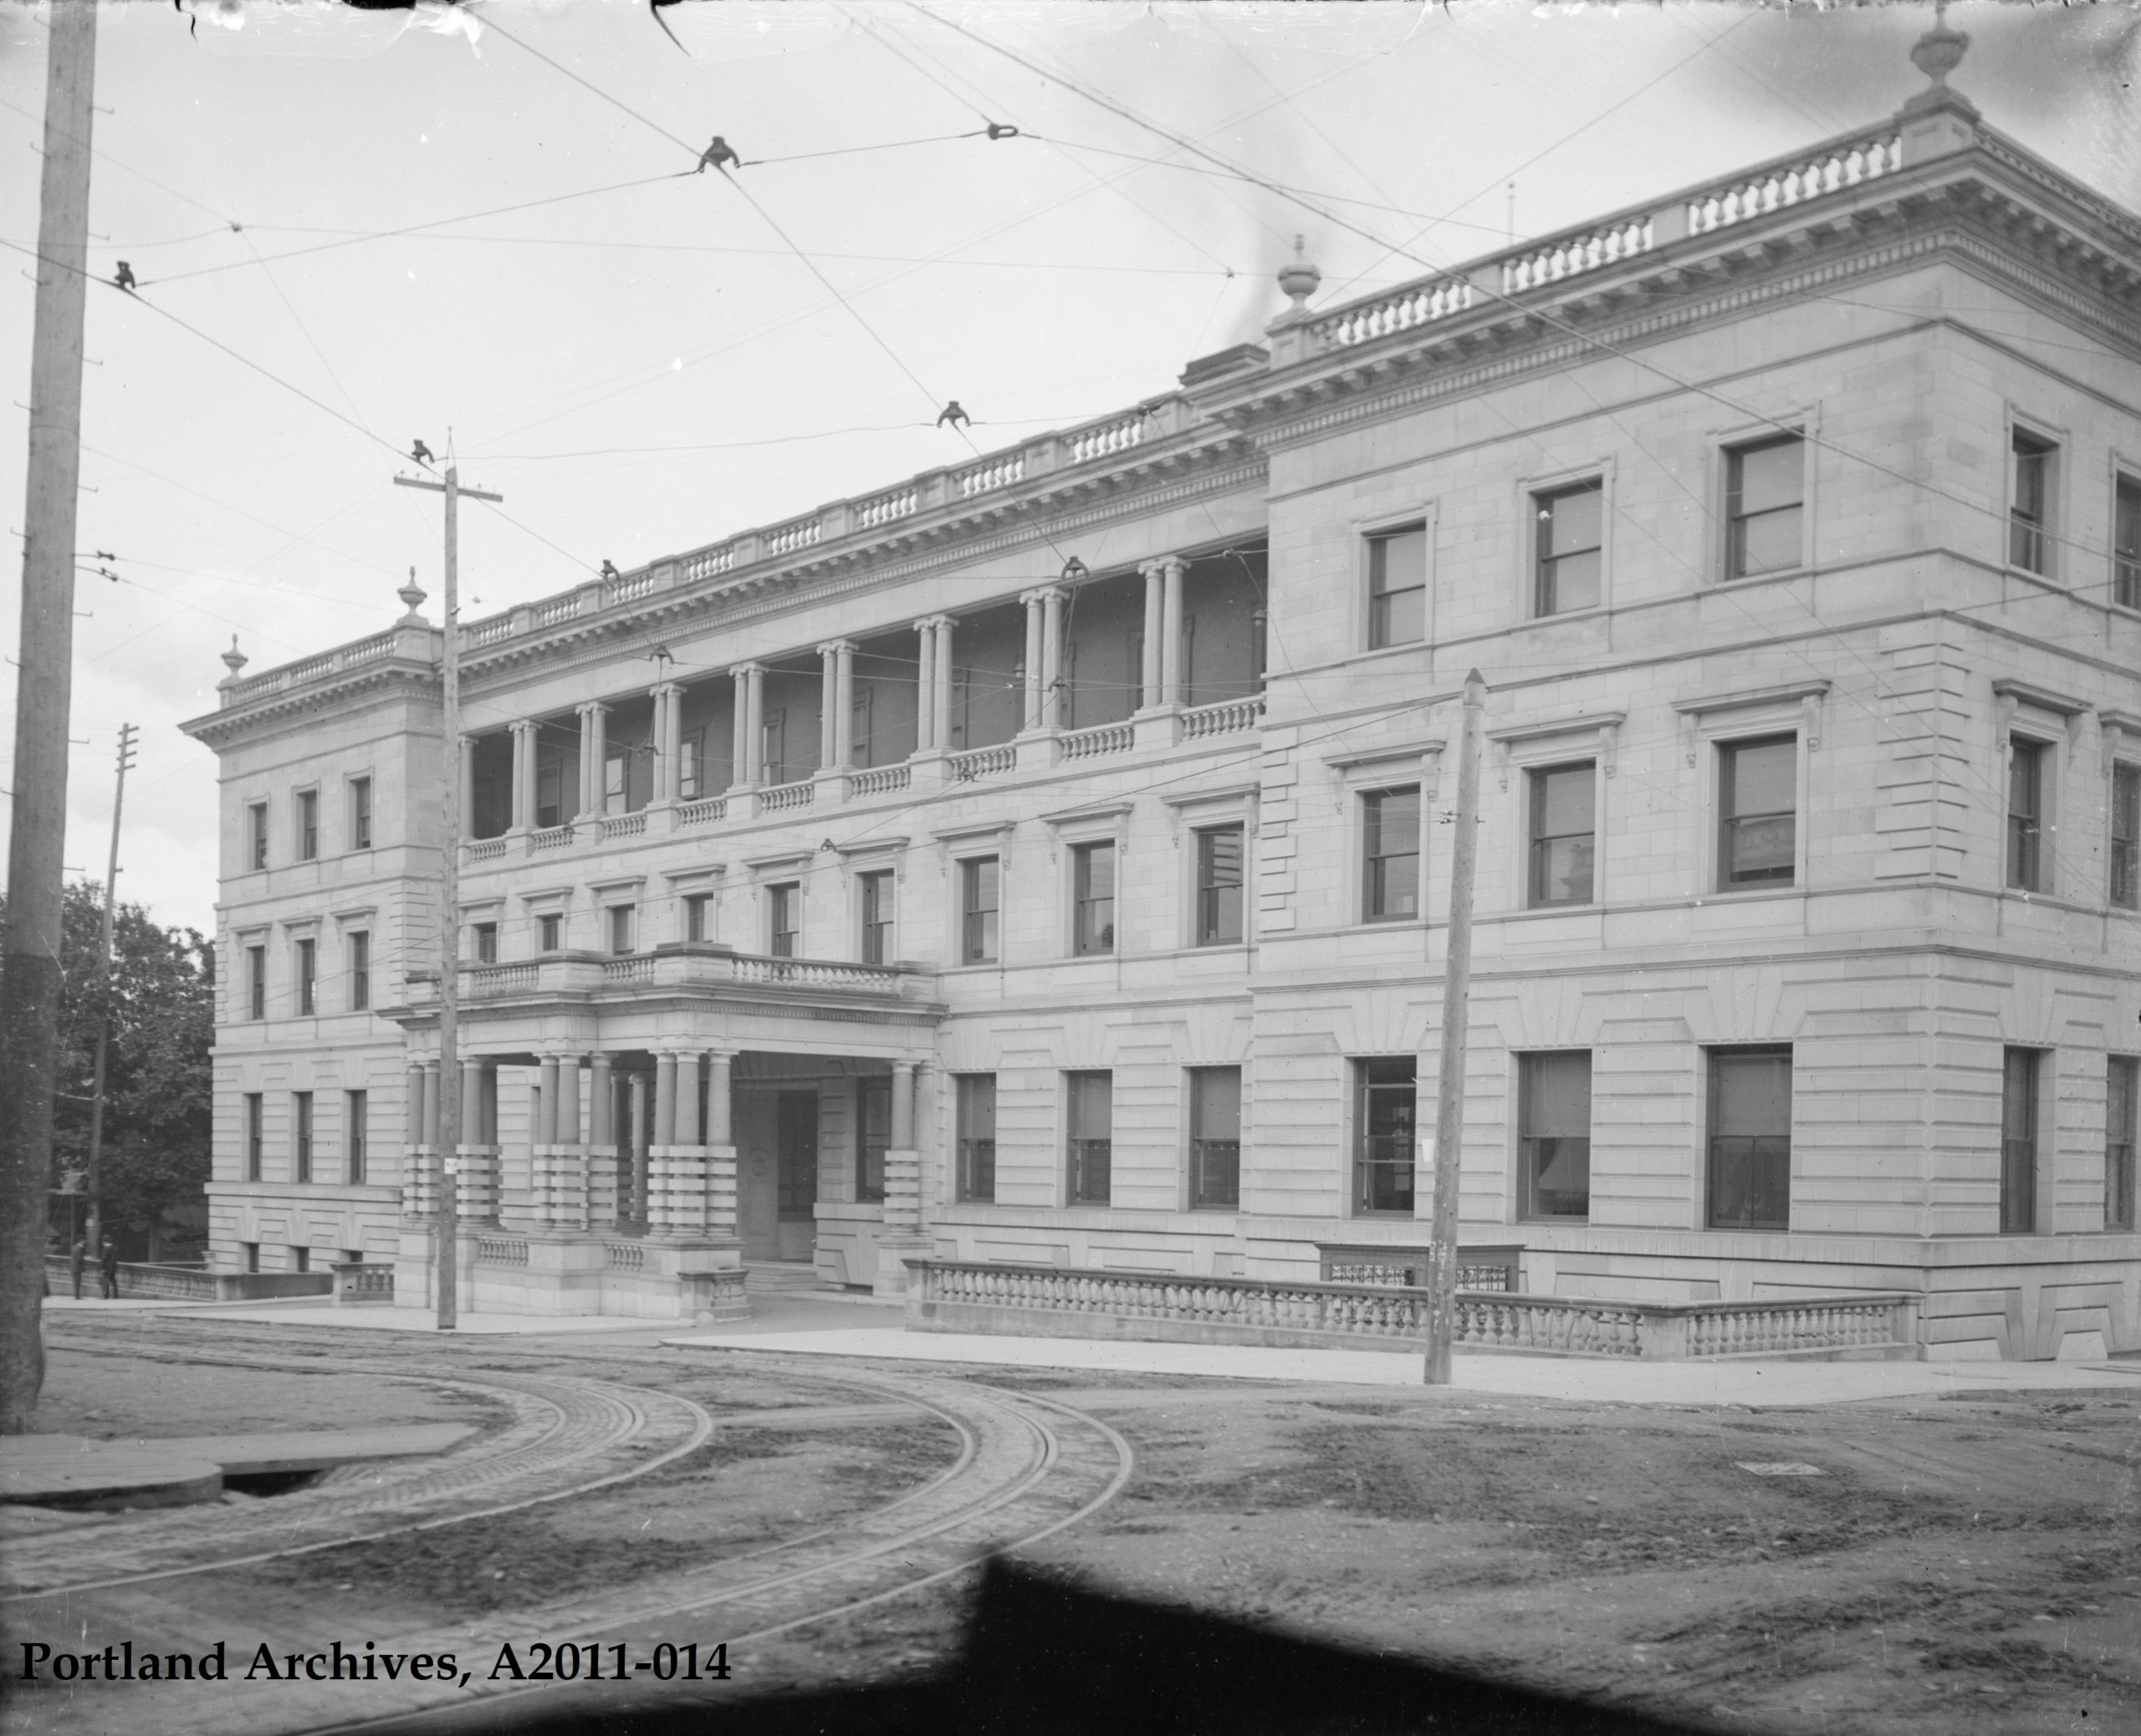 1905 B&W Portland City Hall from 5th Avenue